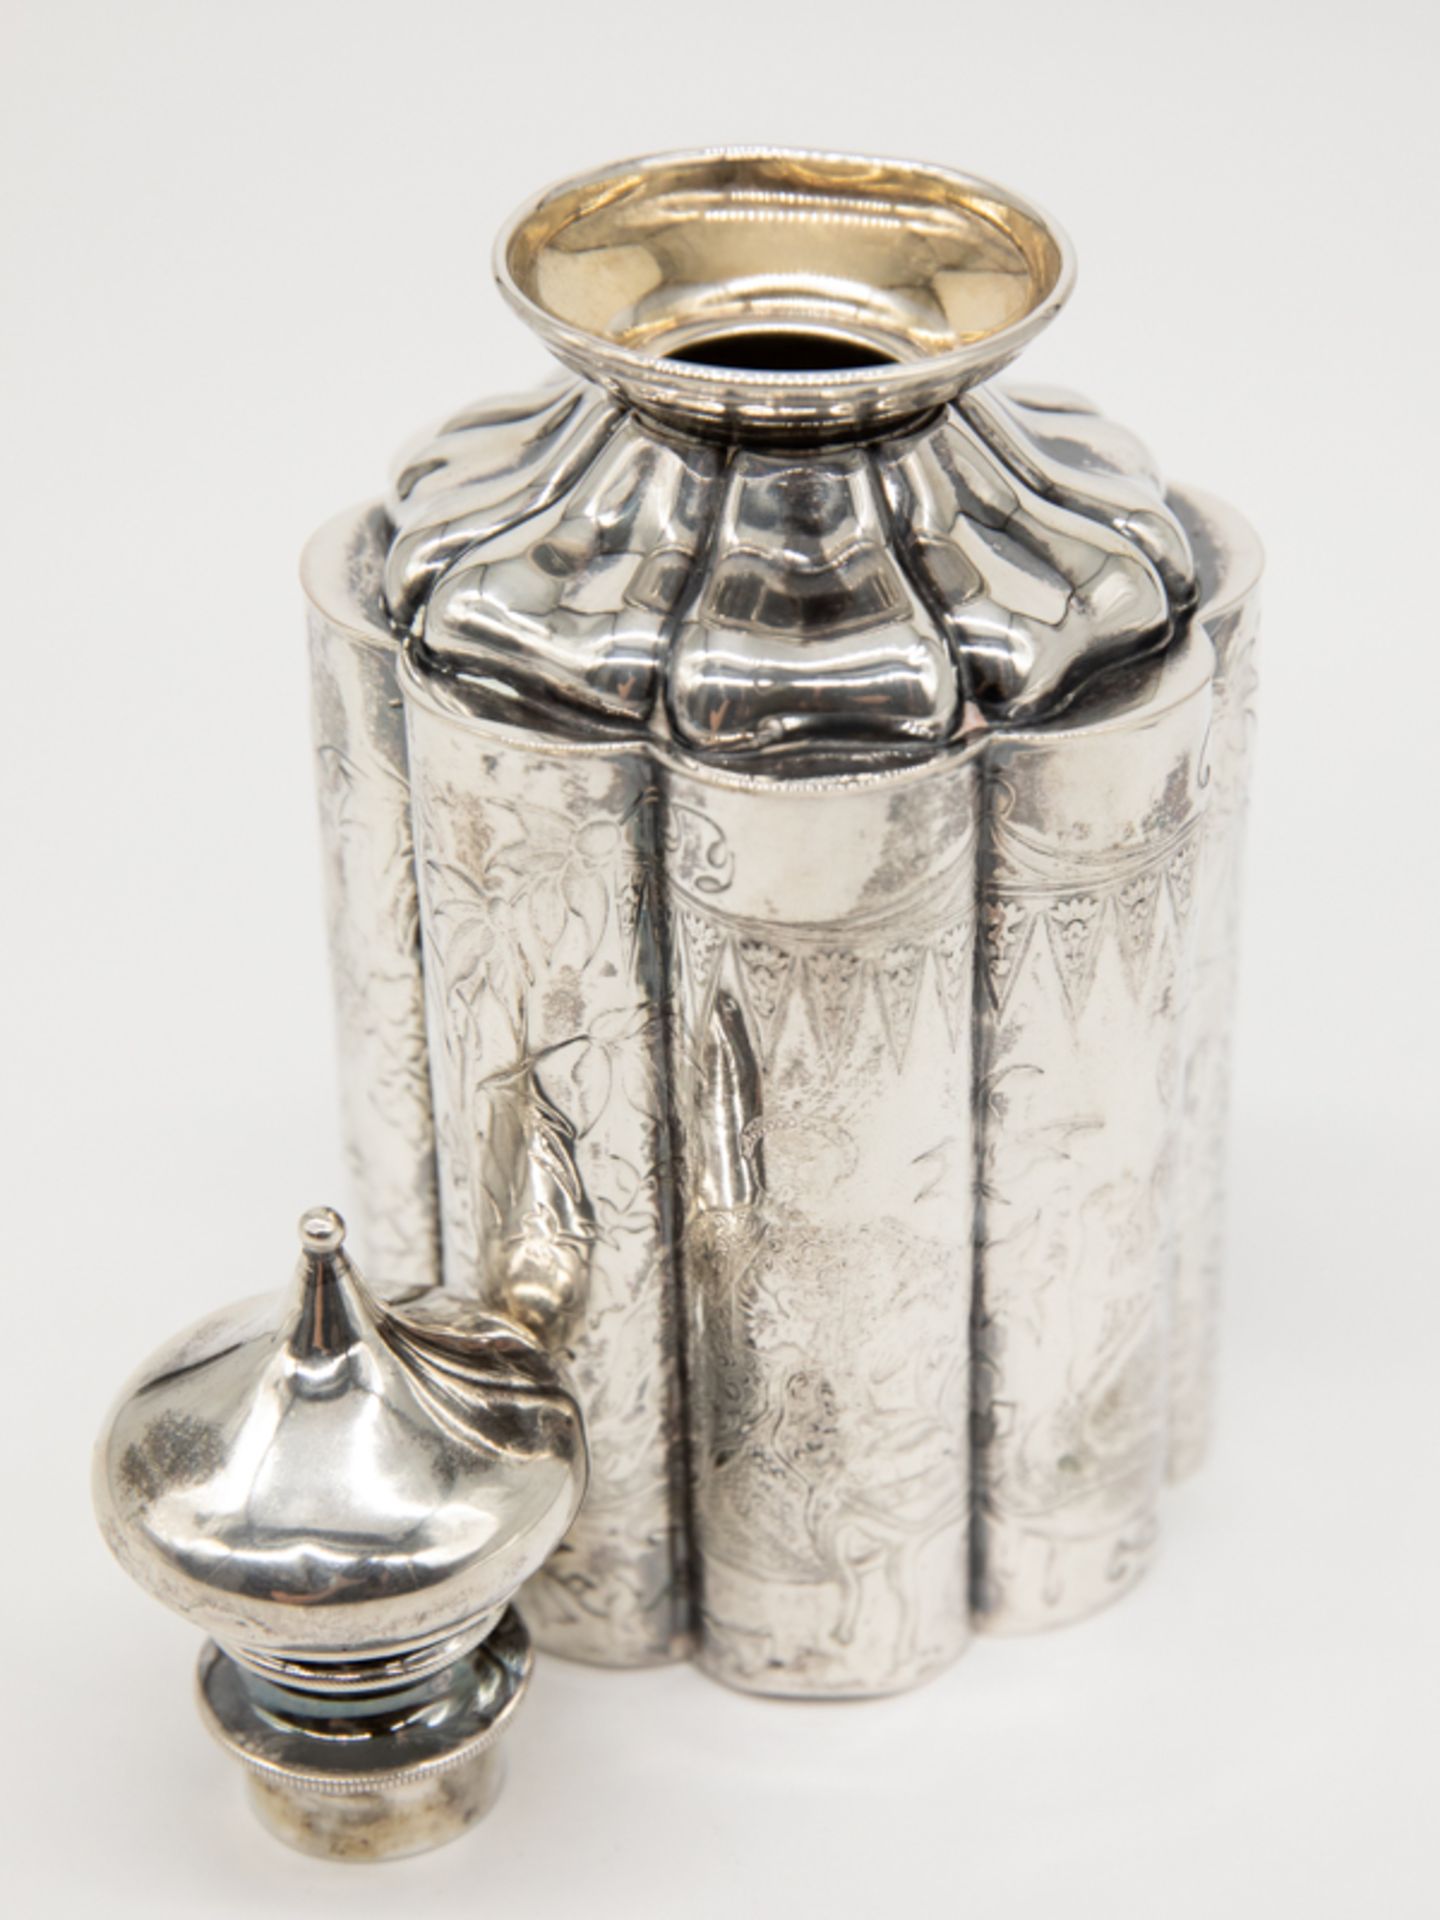 Biedermeier-Teedose mit chinoisem Dekor, Deutschland, um 1860/70. 750/-Silber, ca. 138 g; - Image 2 of 5